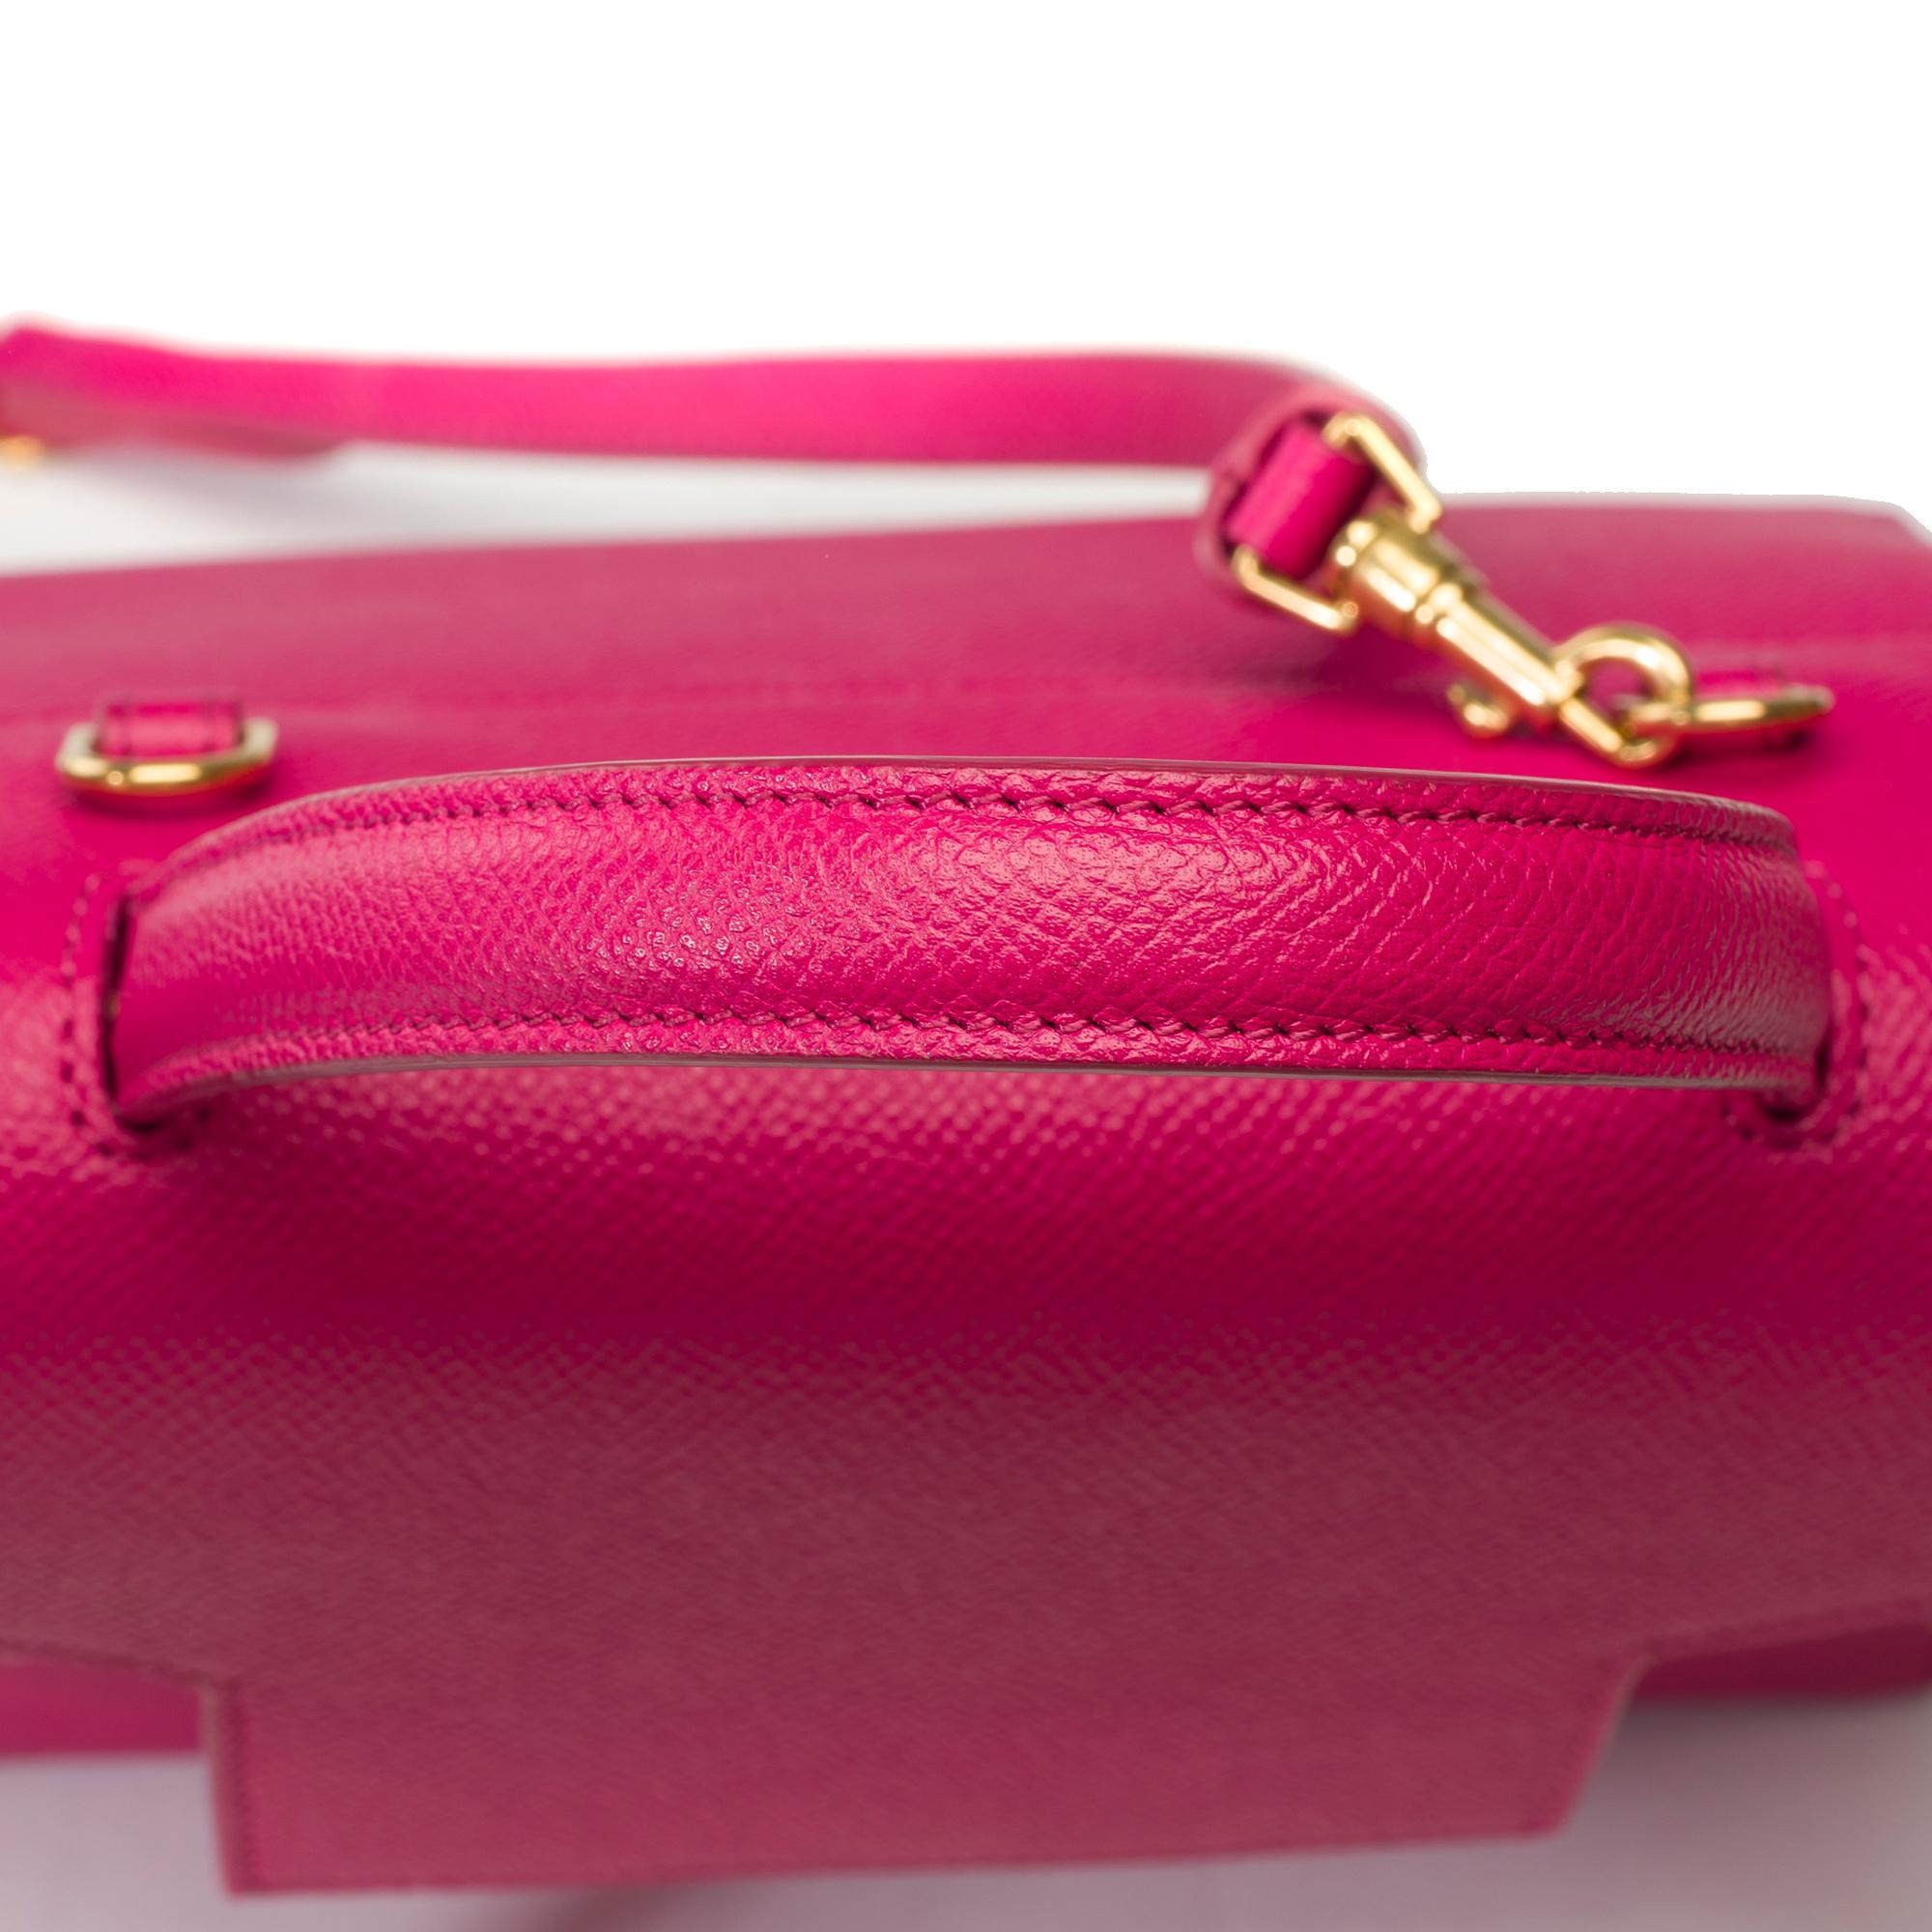 Celine Belt Nano handbag strap in pink calf leather, GHW 6